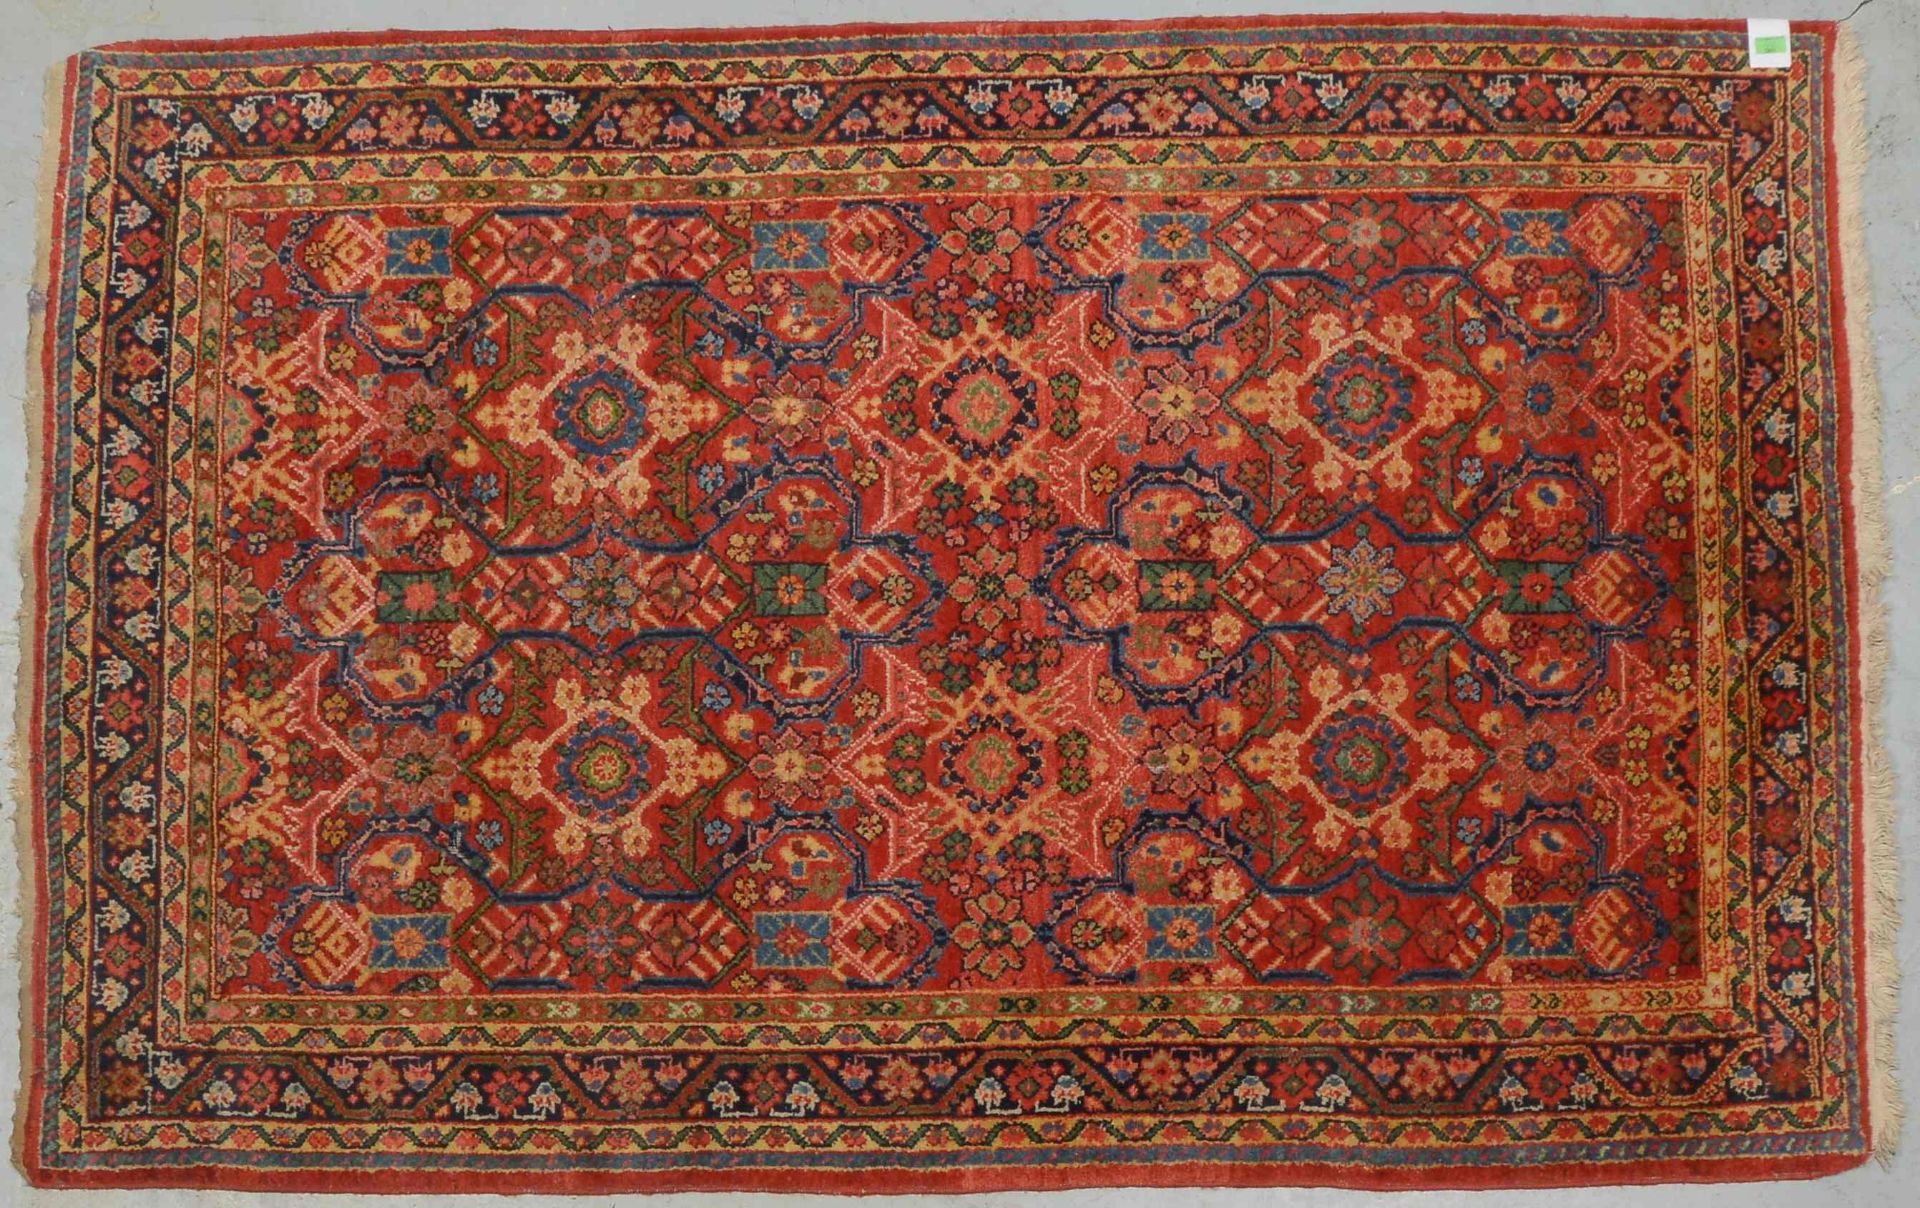 Orientteppich, insgesamt gleichm&auml;&szlig;iger Flor; Ma&szlig;e 220 x 140 cm (mit einigen Spuren